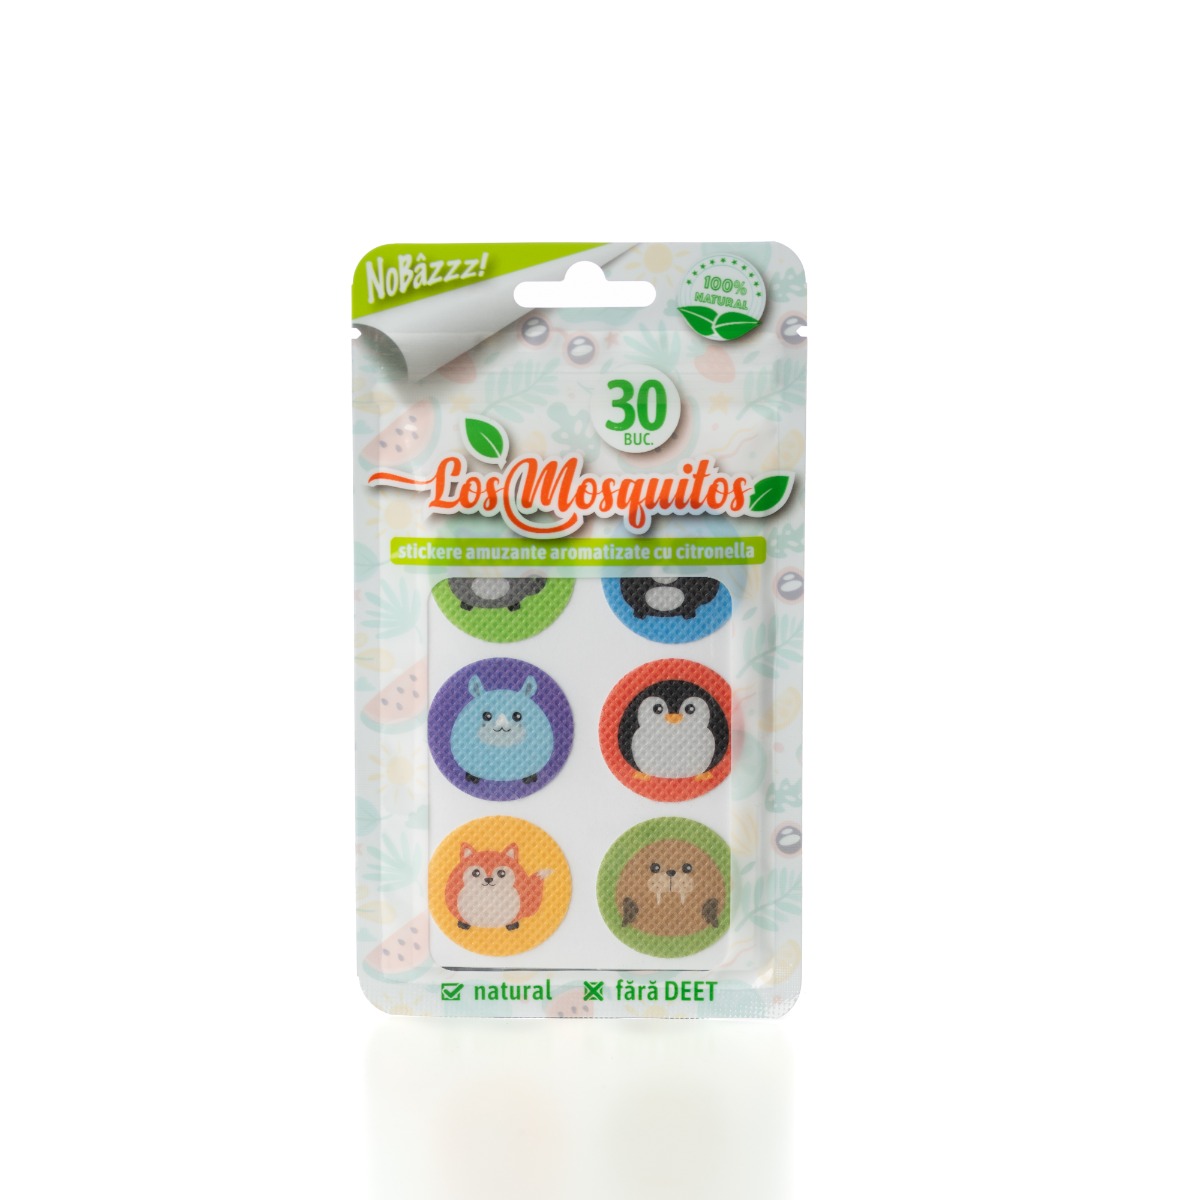 Stickere aromatizate cu citronella model cu animale, 30 bucati, Los Mosquitos